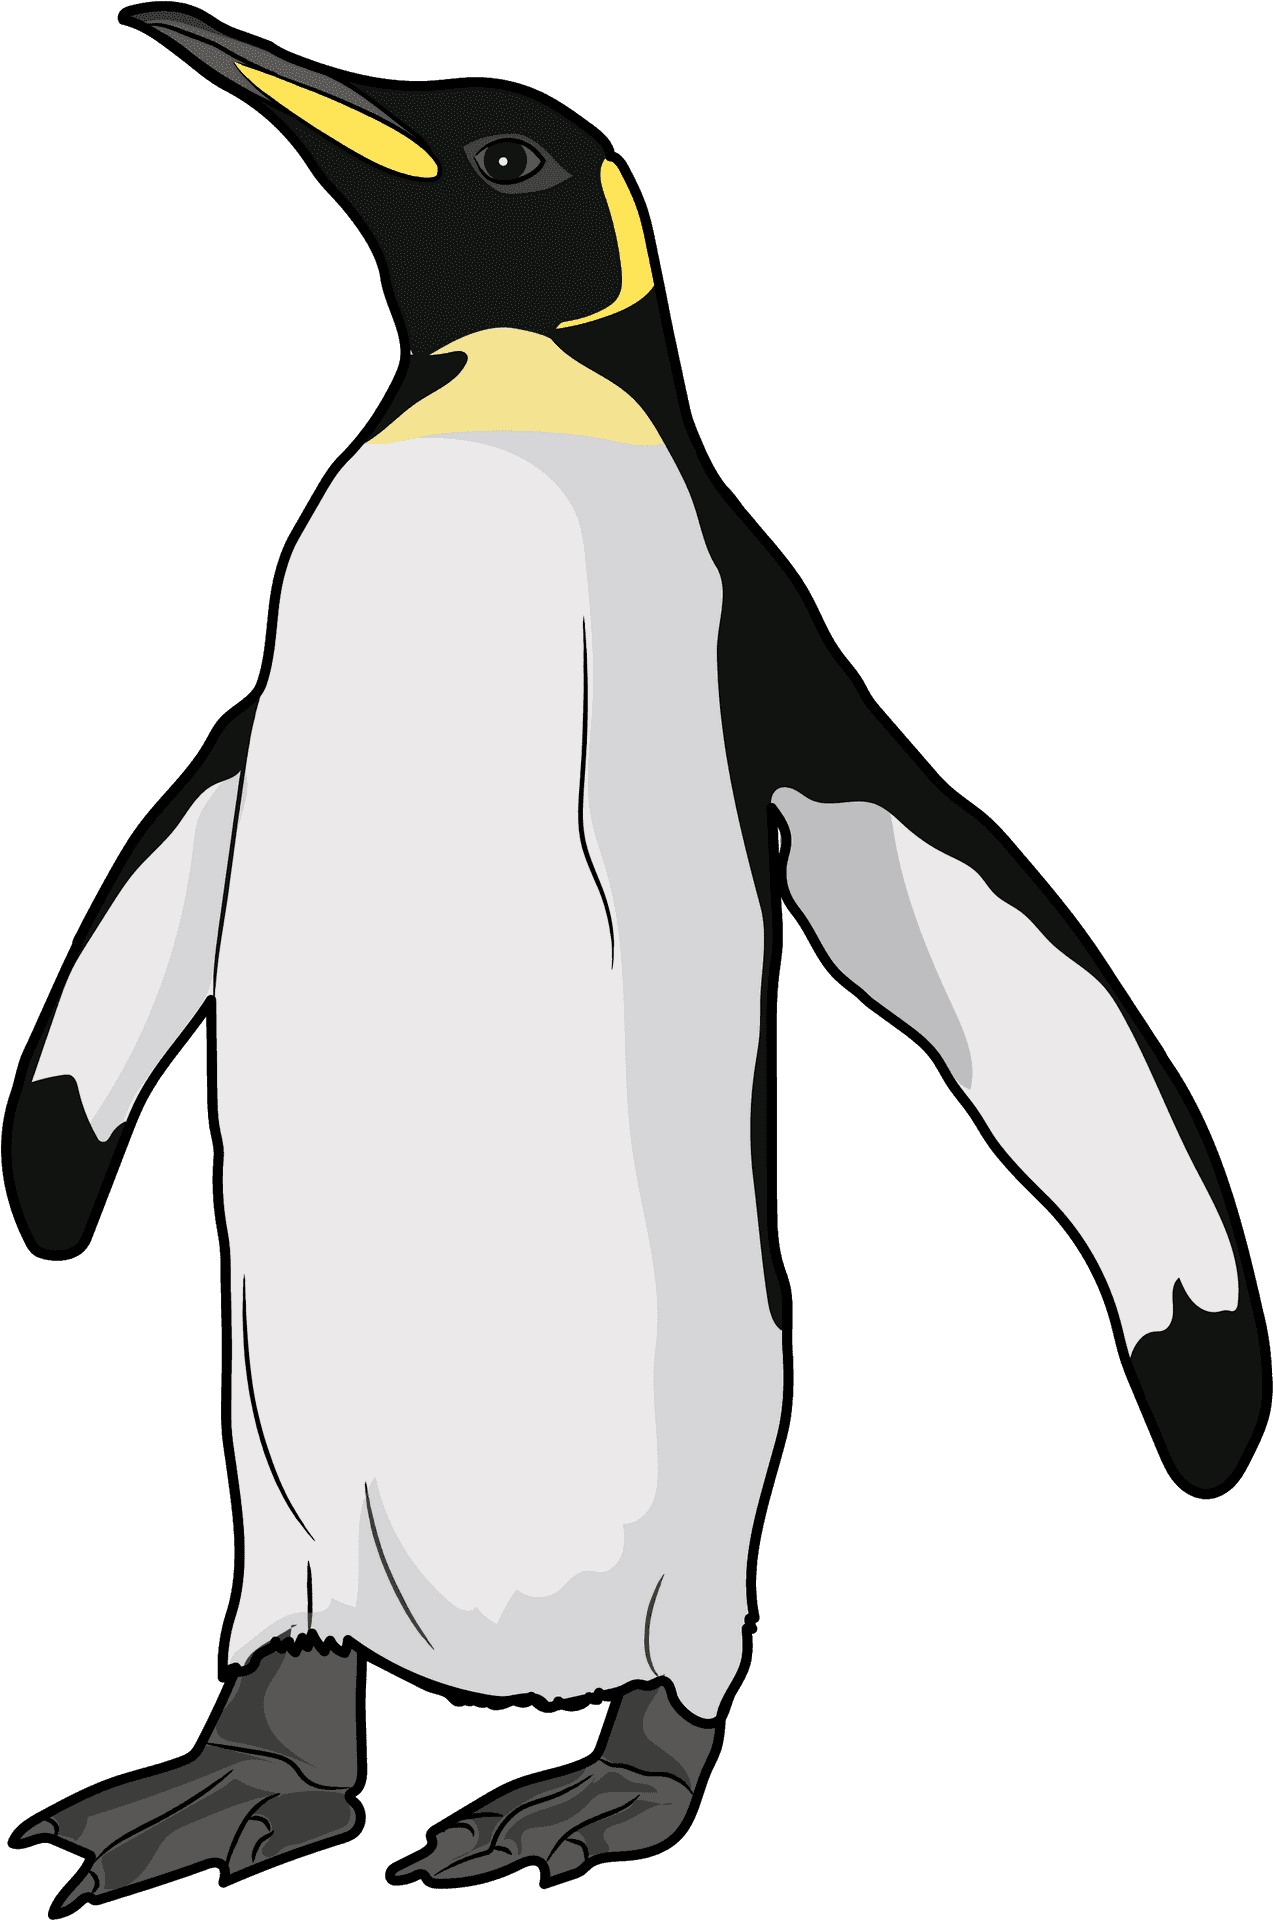 Emperor Penguin Illustration PNG